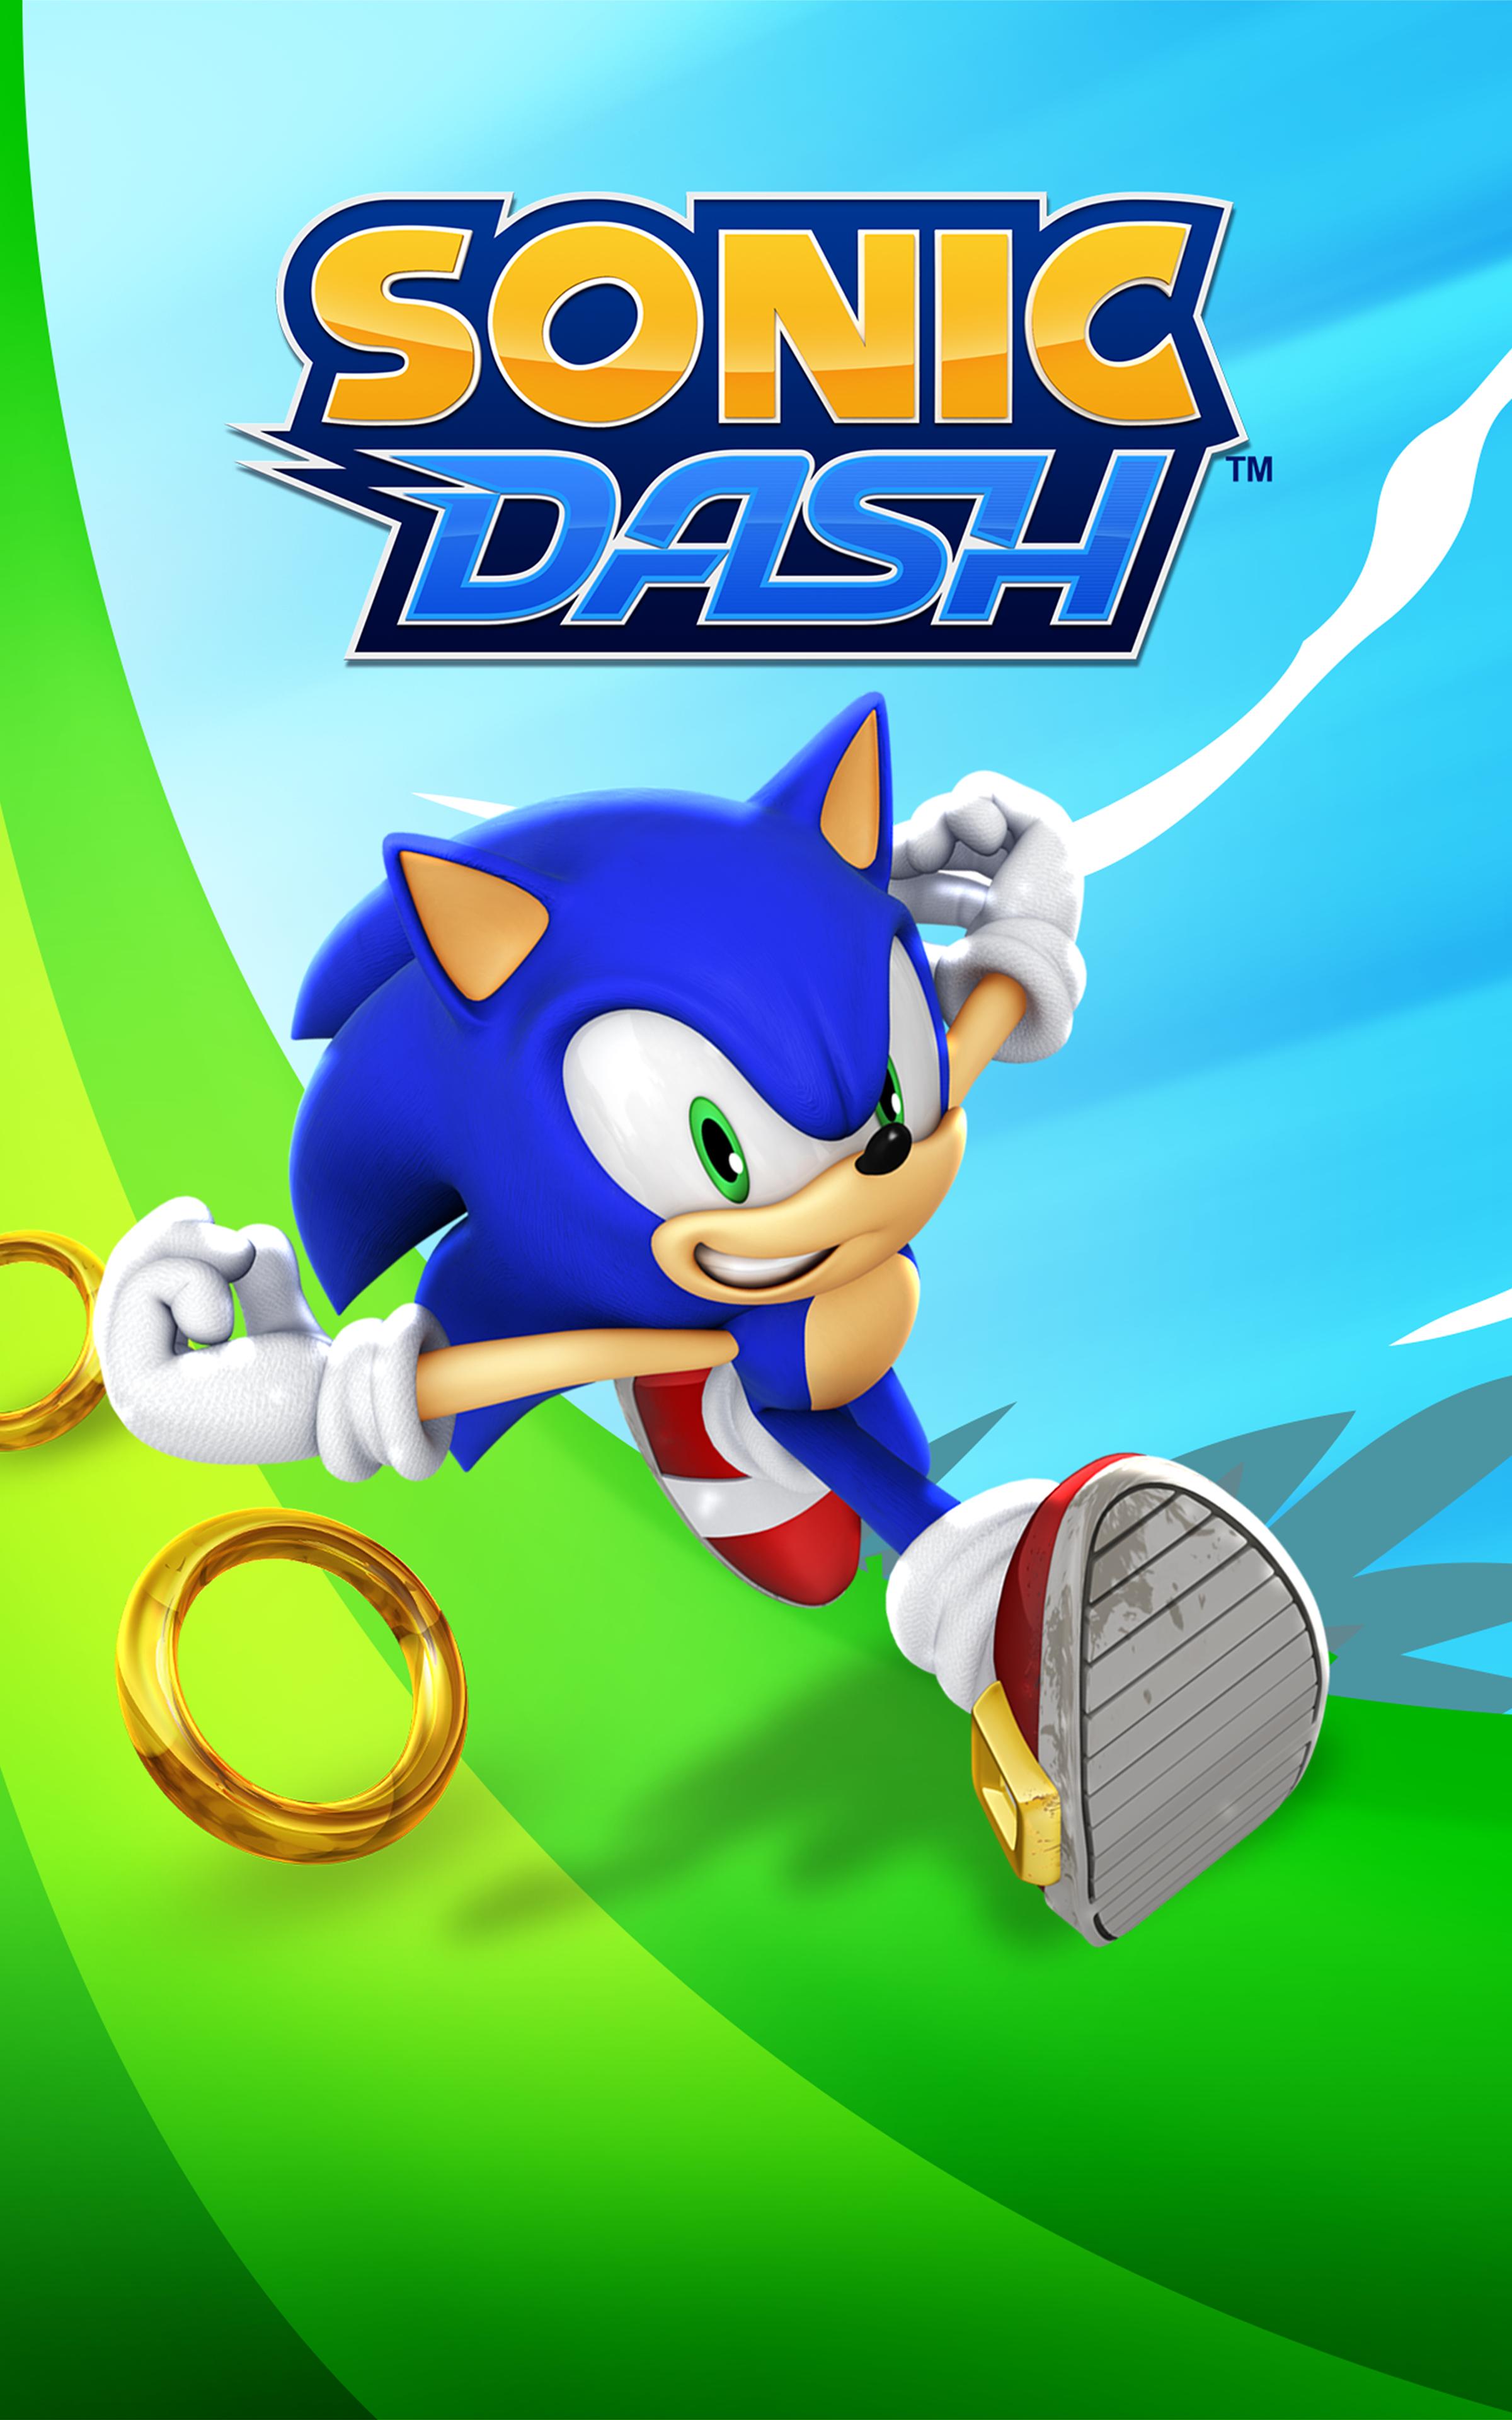 Sonic Dash - Endless Running & Racing Game 4.14.0 Screenshot 22